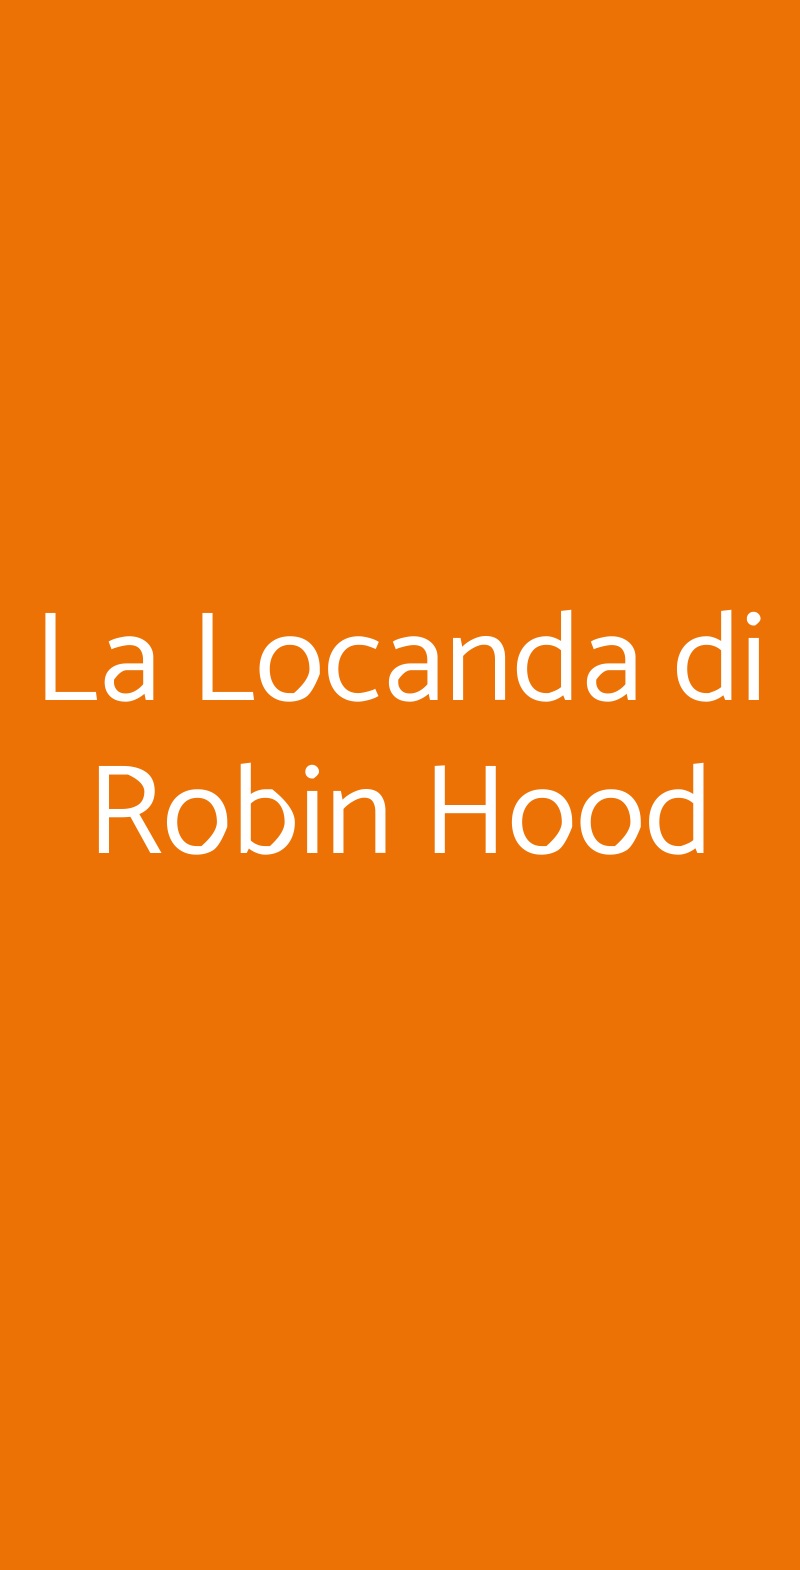 La Locanda di Robin Hood Napoli menù 1 pagina